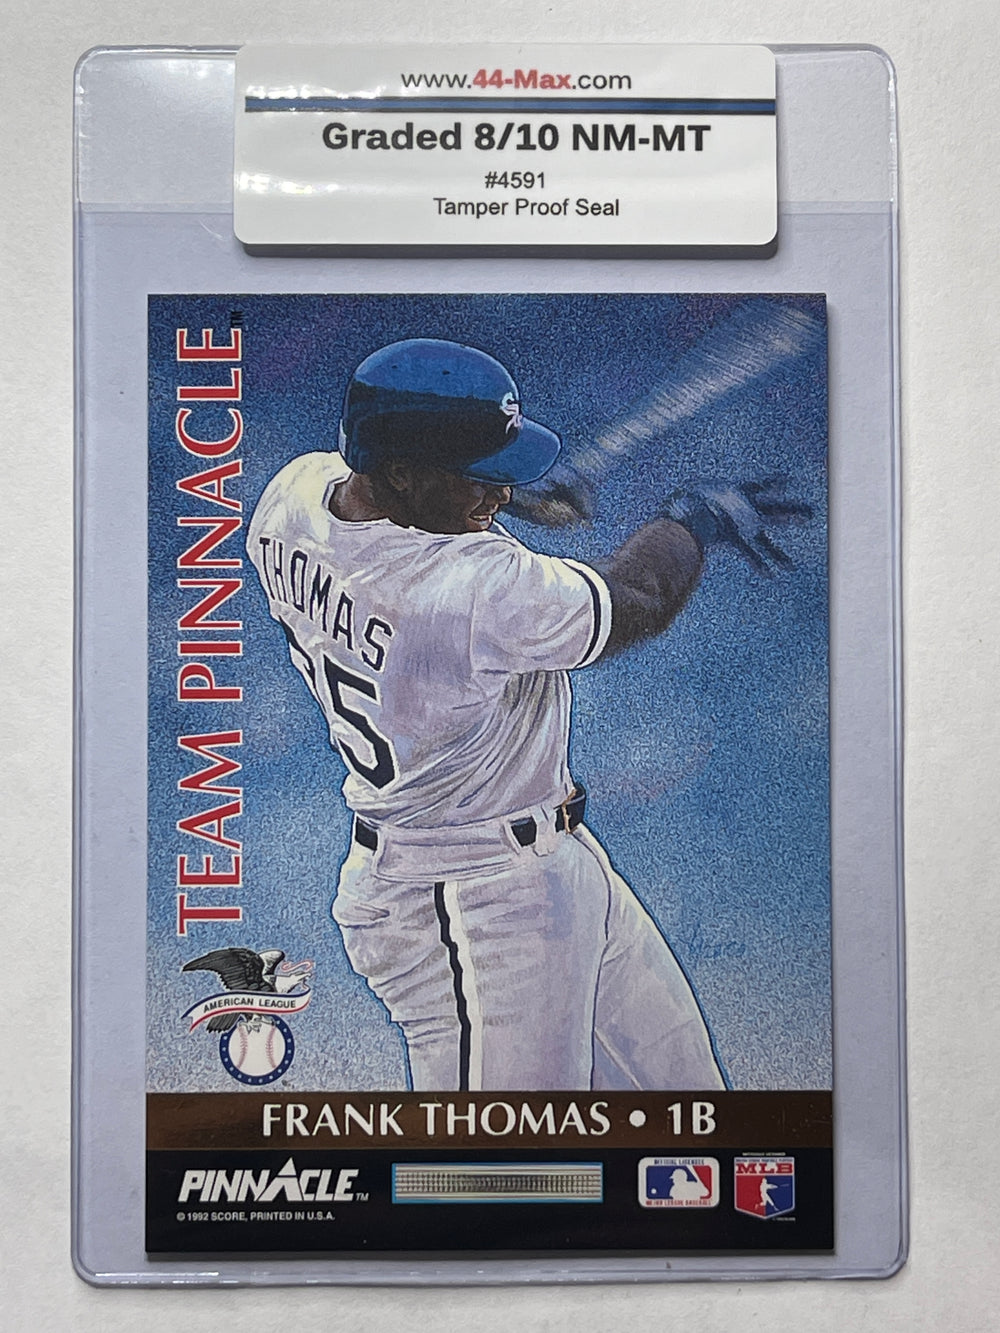 Frank Thomas 1992 Team Pinnacle Baseball Card. 44-Max 8/10 NM-MT #4591